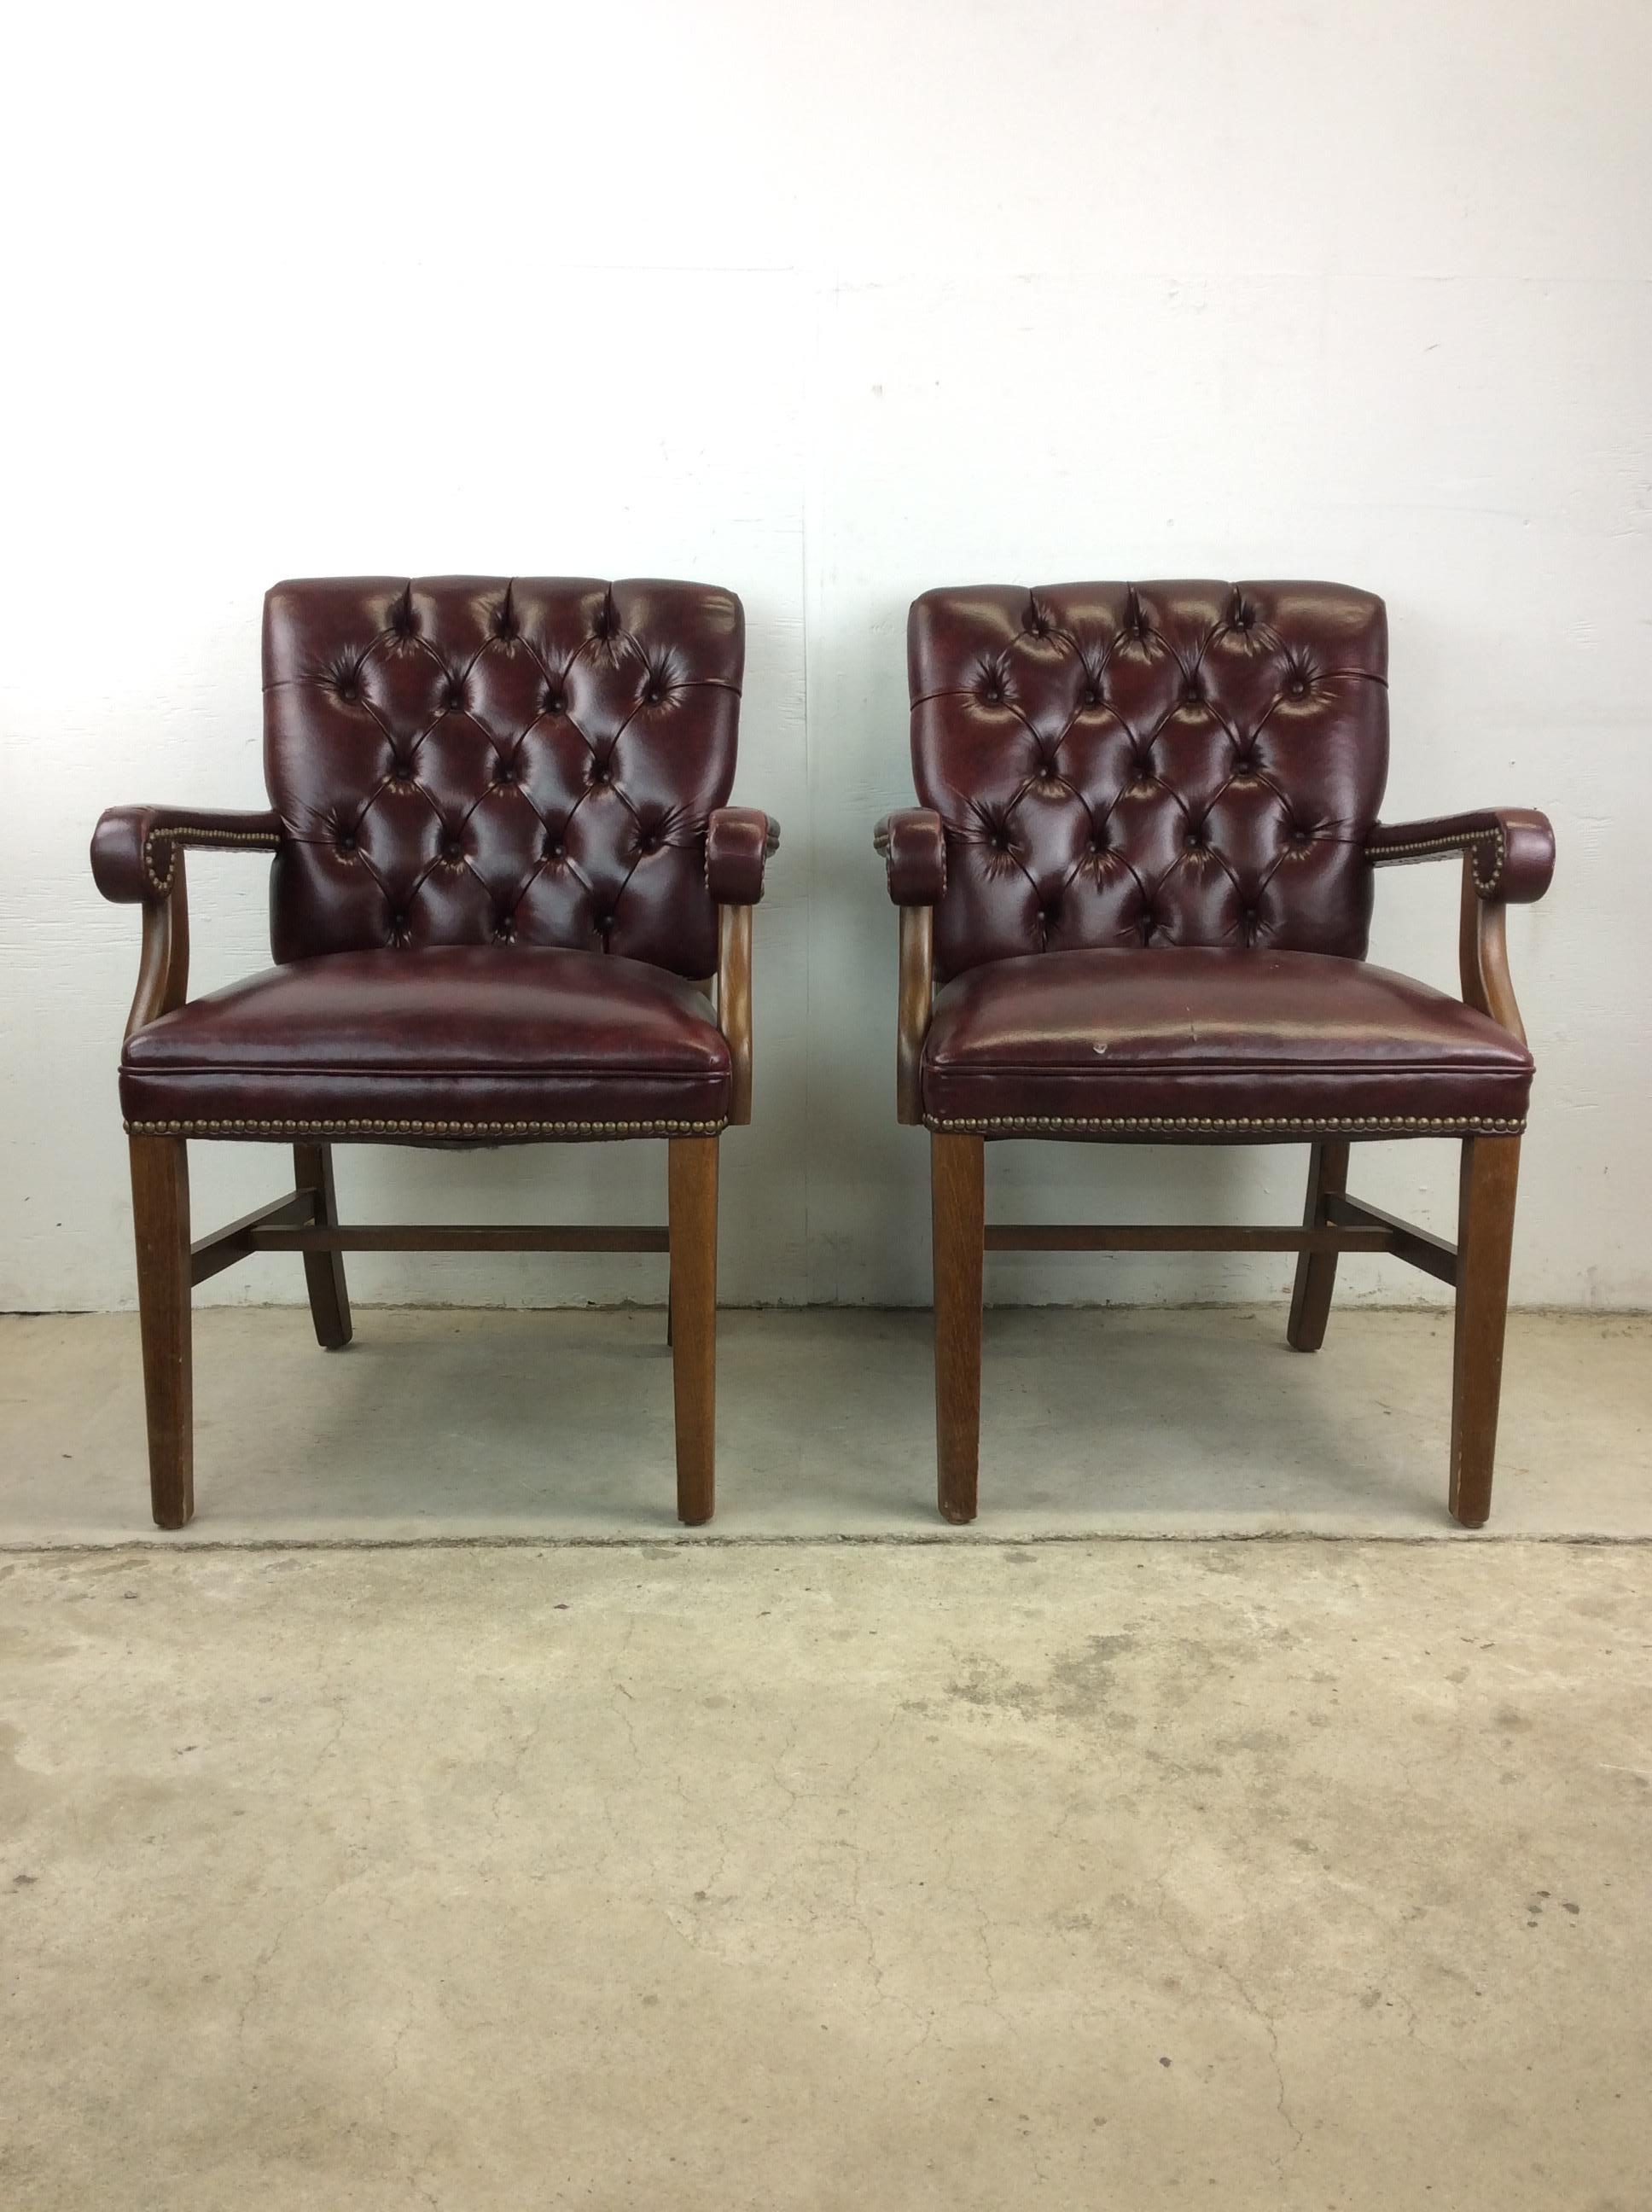 Dieses Paar Chesterfield-Sessel im Vintage-Stil ist mit rotem Leder gepolstert, hat getuftete Rückenlehnen und Armlehnen und Sockel aus Hartholz.

Abmessungen: 25b 26d 35h 20sh 25ah

Zustand: Die Polsterung ist in gutem Originalzustand mit nur